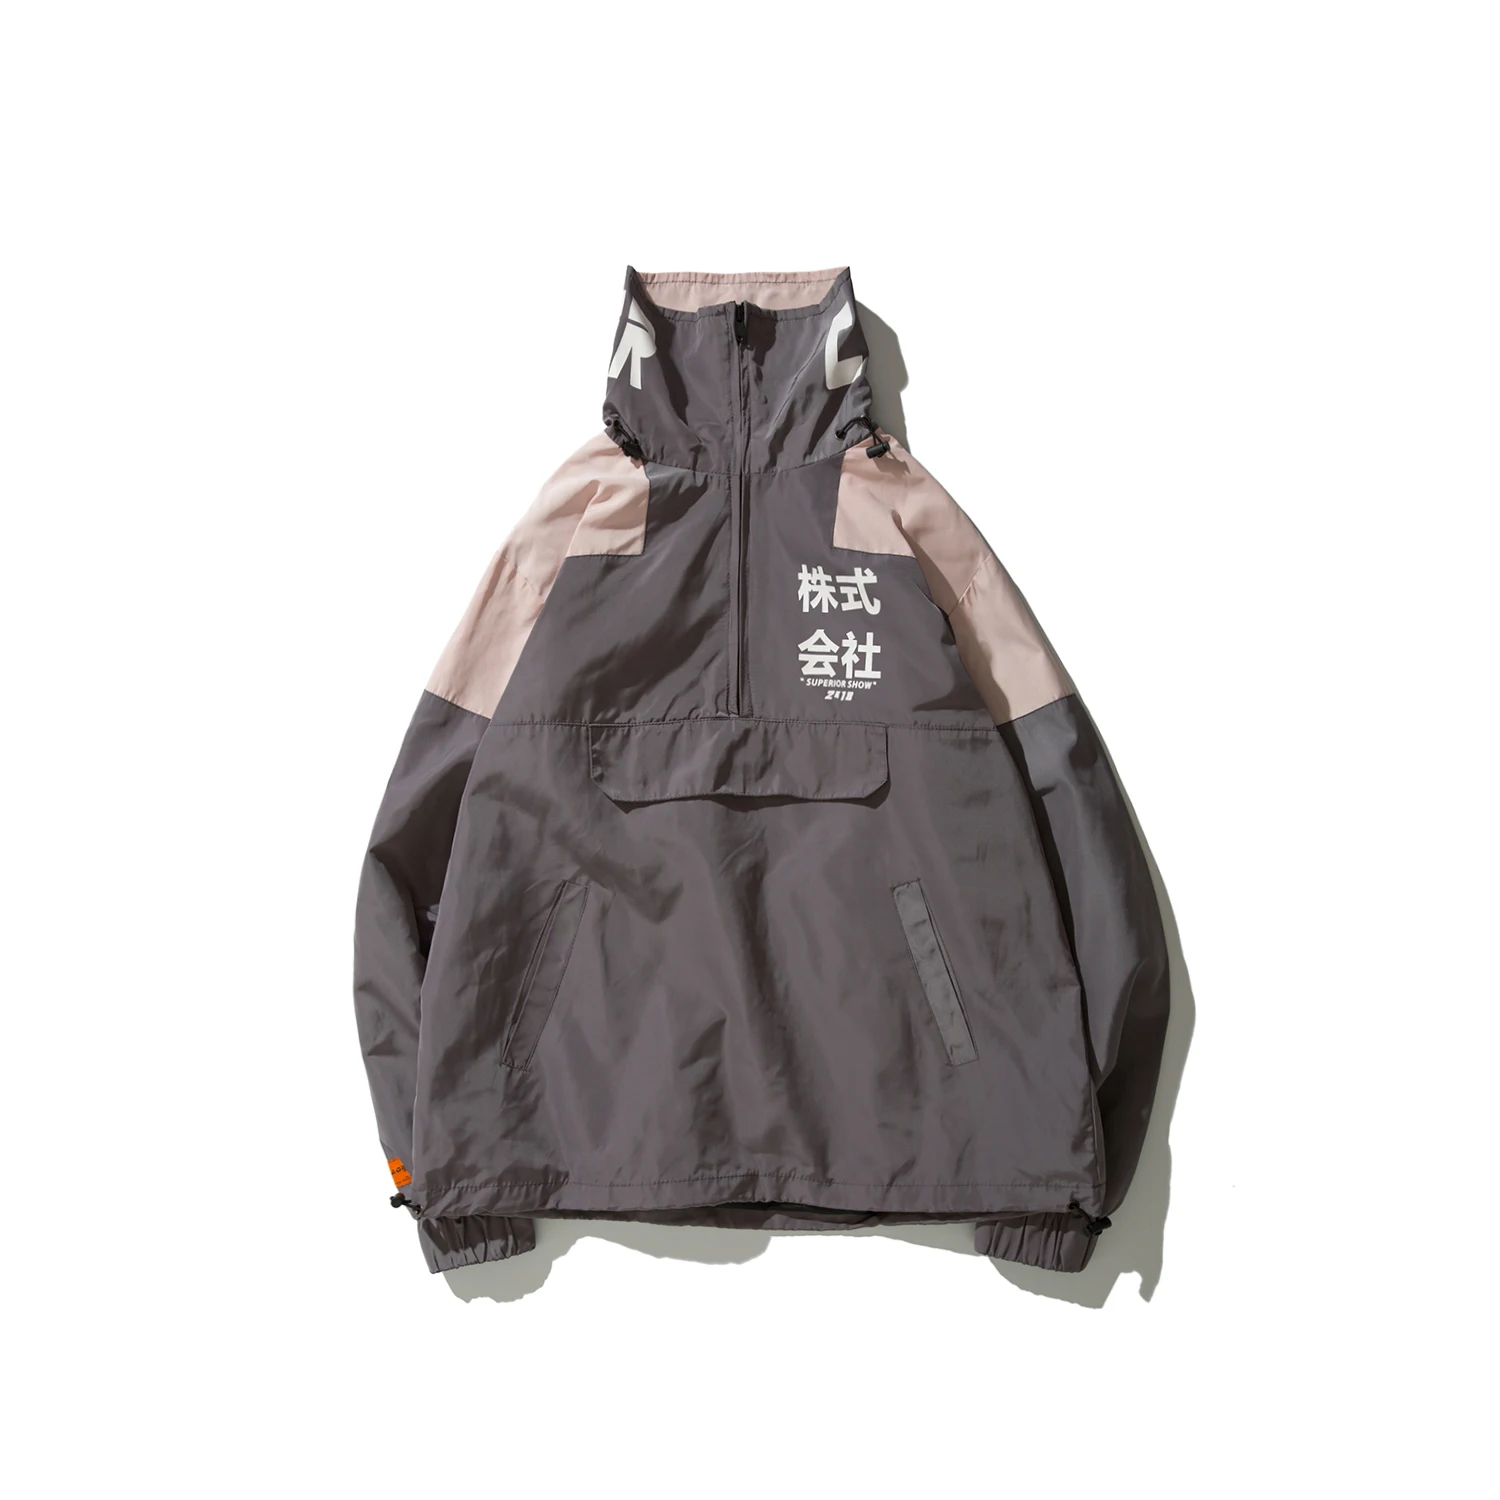 Японская уличная одежда, мужская куртка, осенняя повседневная спортивная одежда в стиле хип-хоп, винтажный бренд, куртка для ветряной погоды - Цвет: Серый